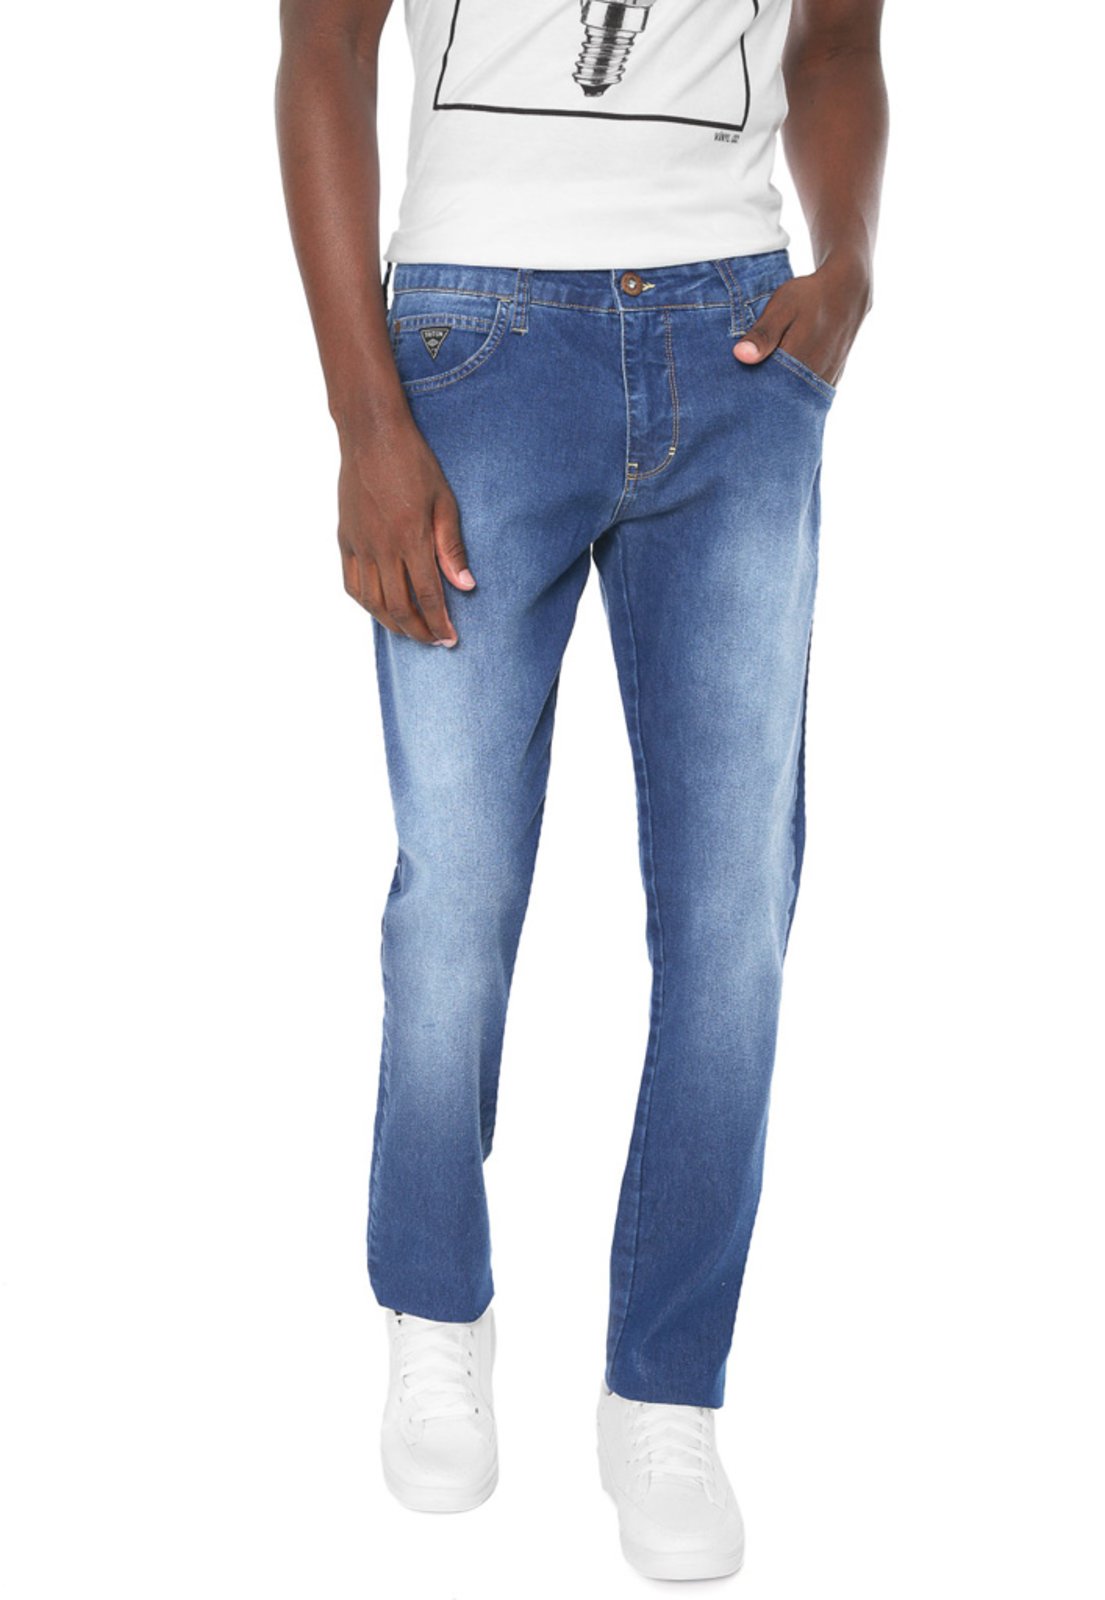 triton jeans